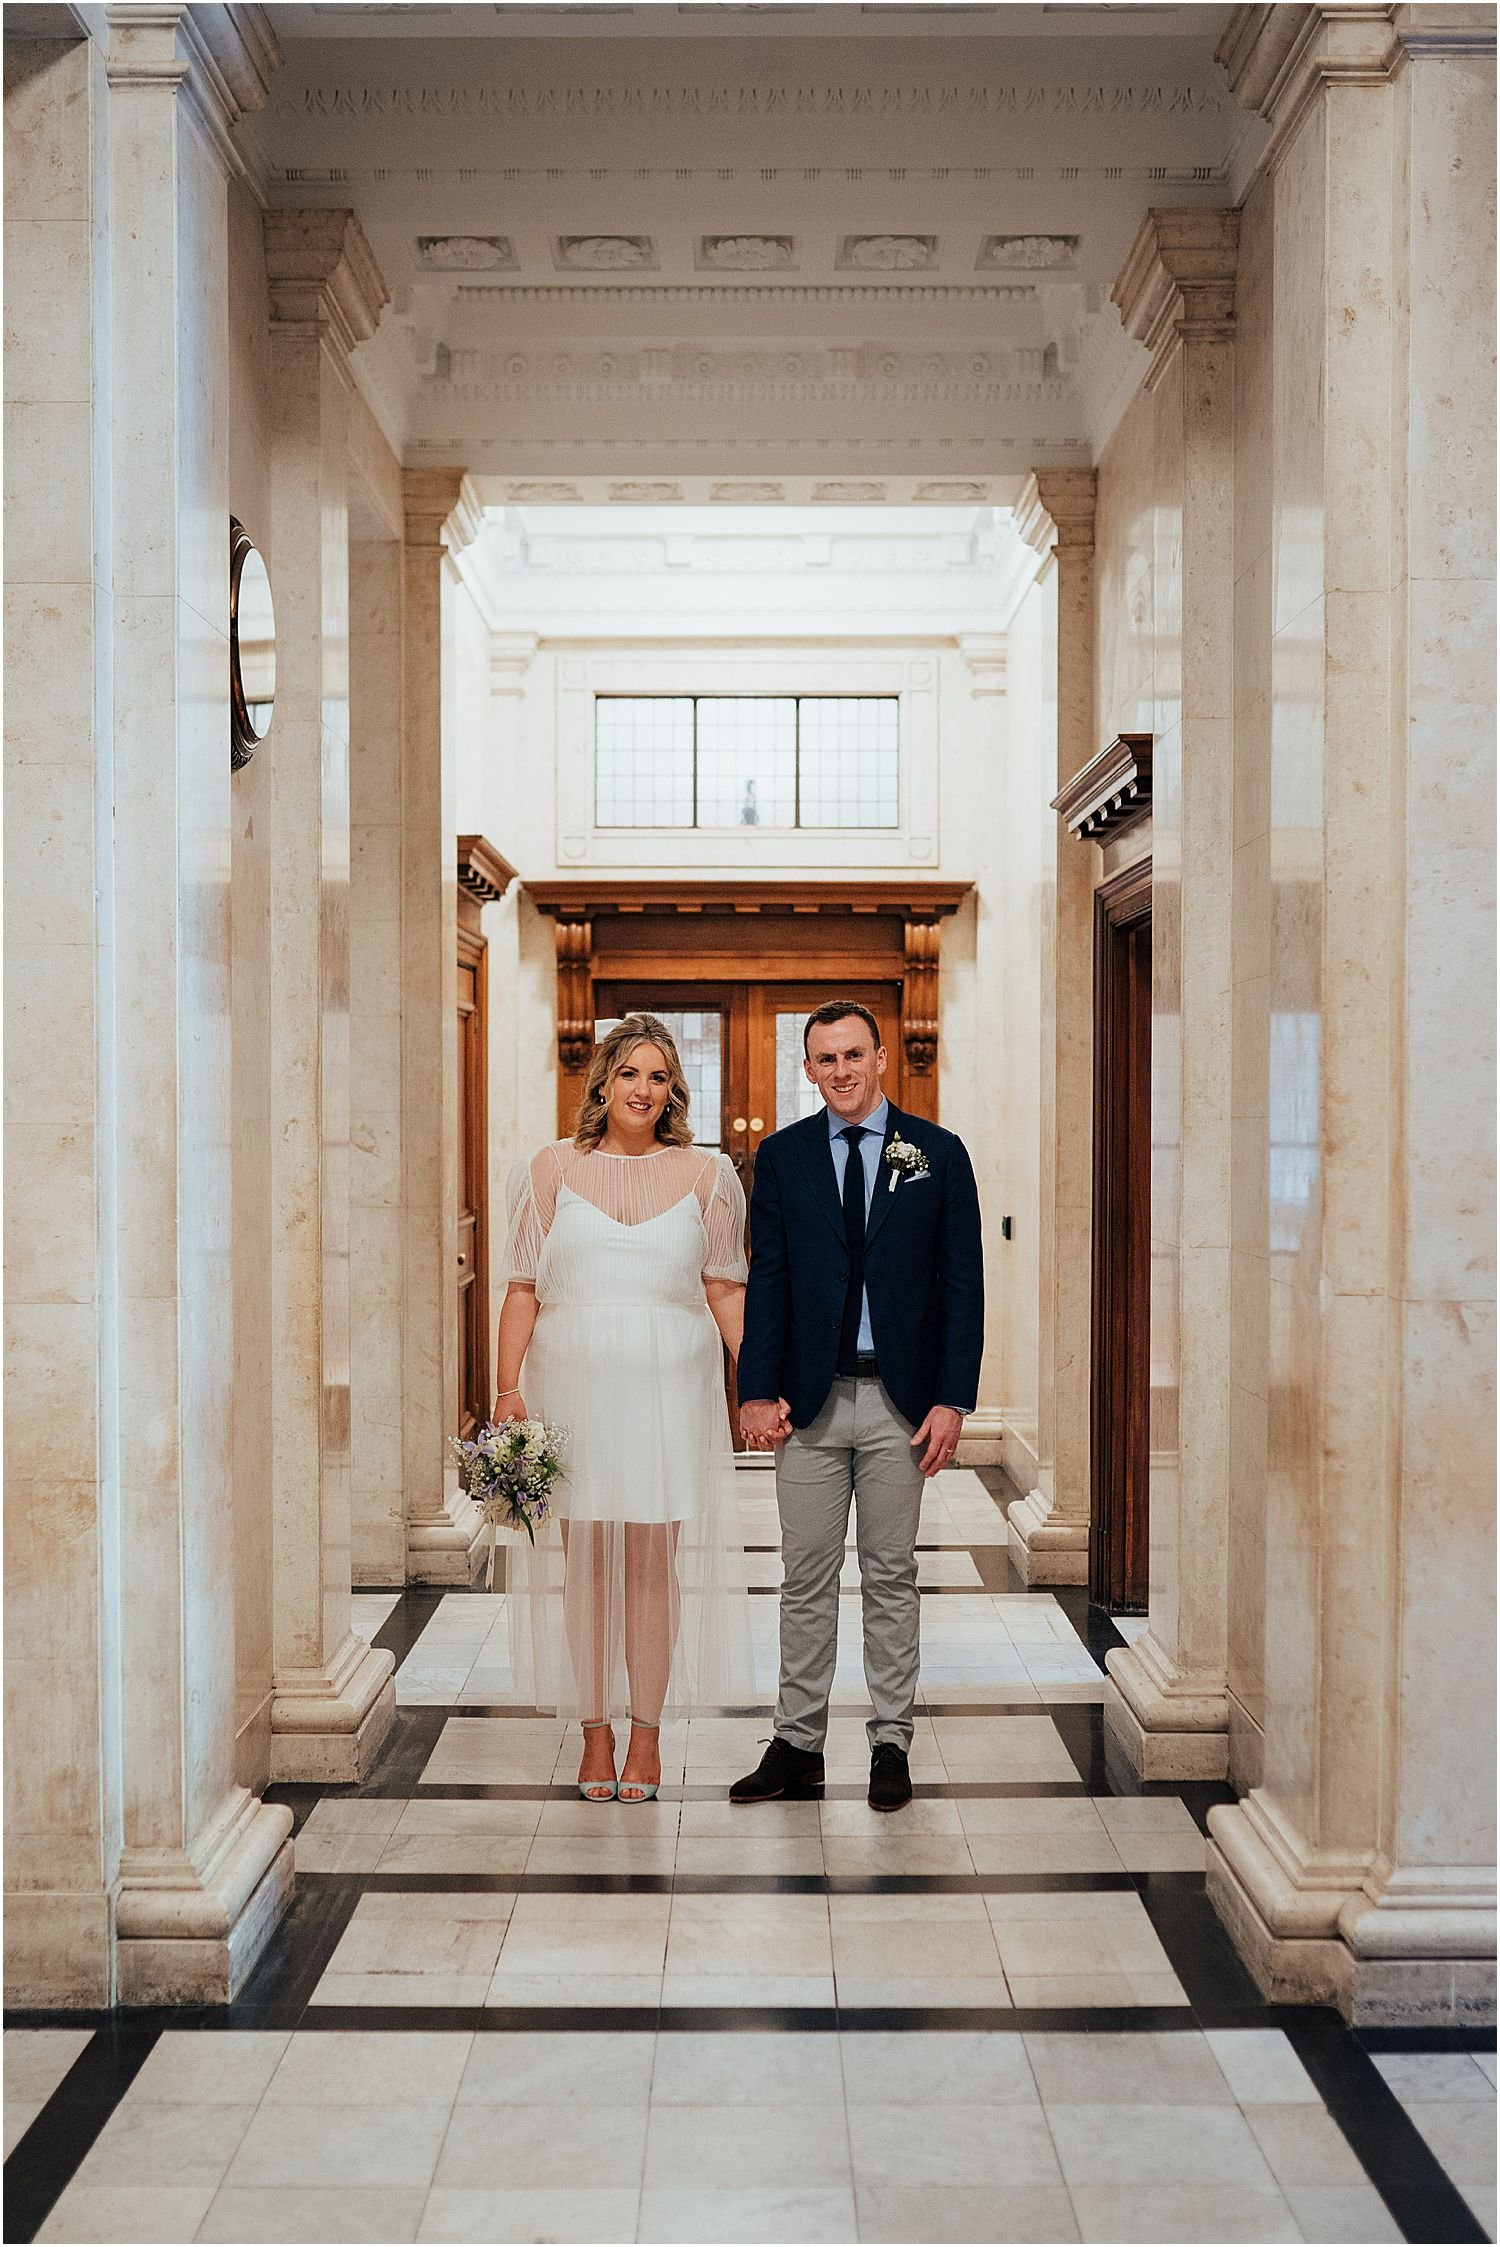 Bride and groom standing in hallway